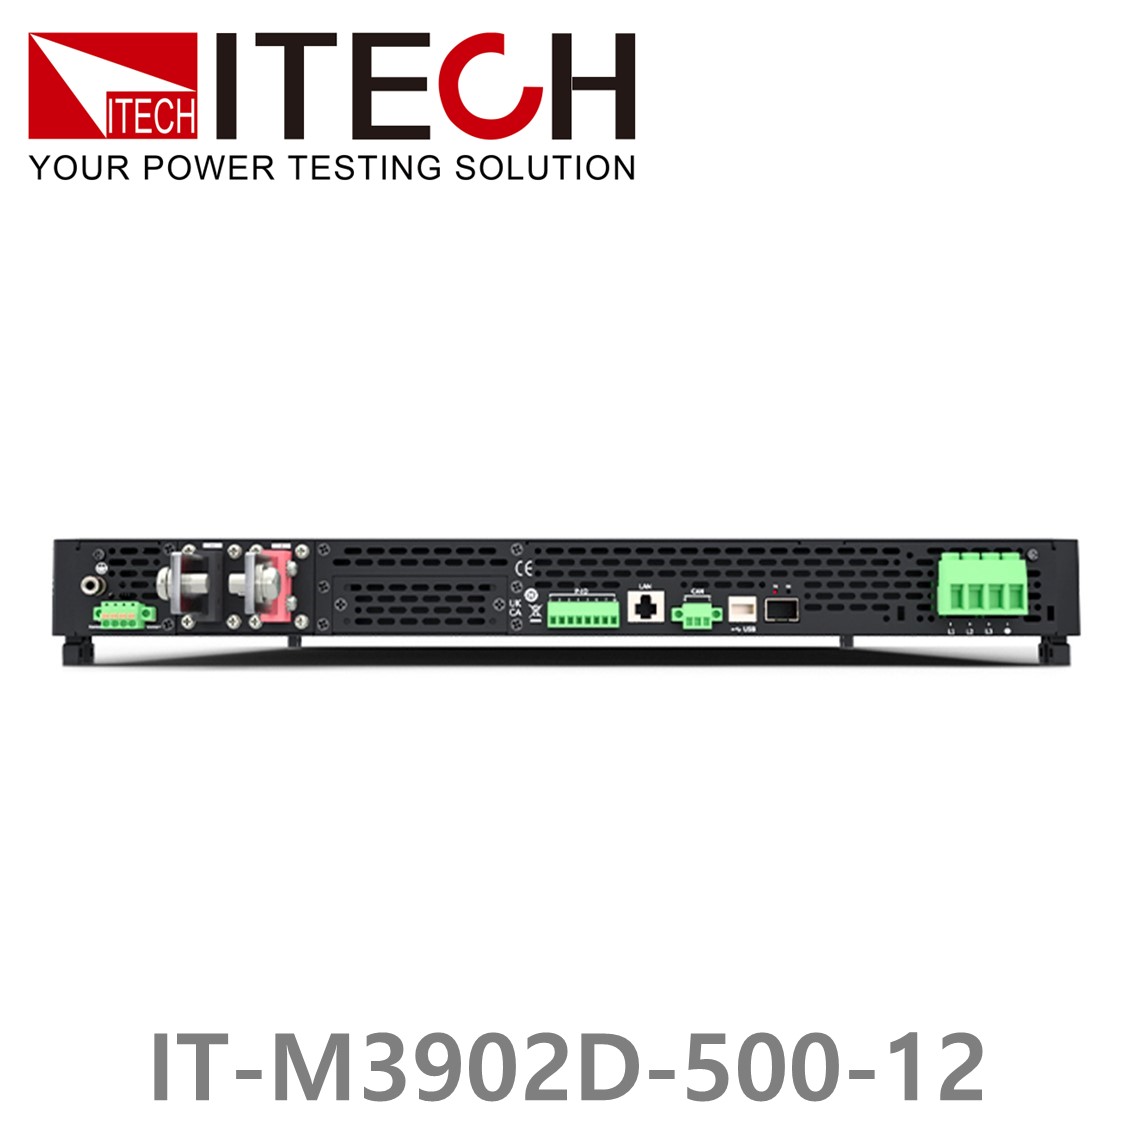 [ ITECH ] IT-M3902D-500-12 양방향 프로그래머블 DC전원공급기, DC파워서플라이